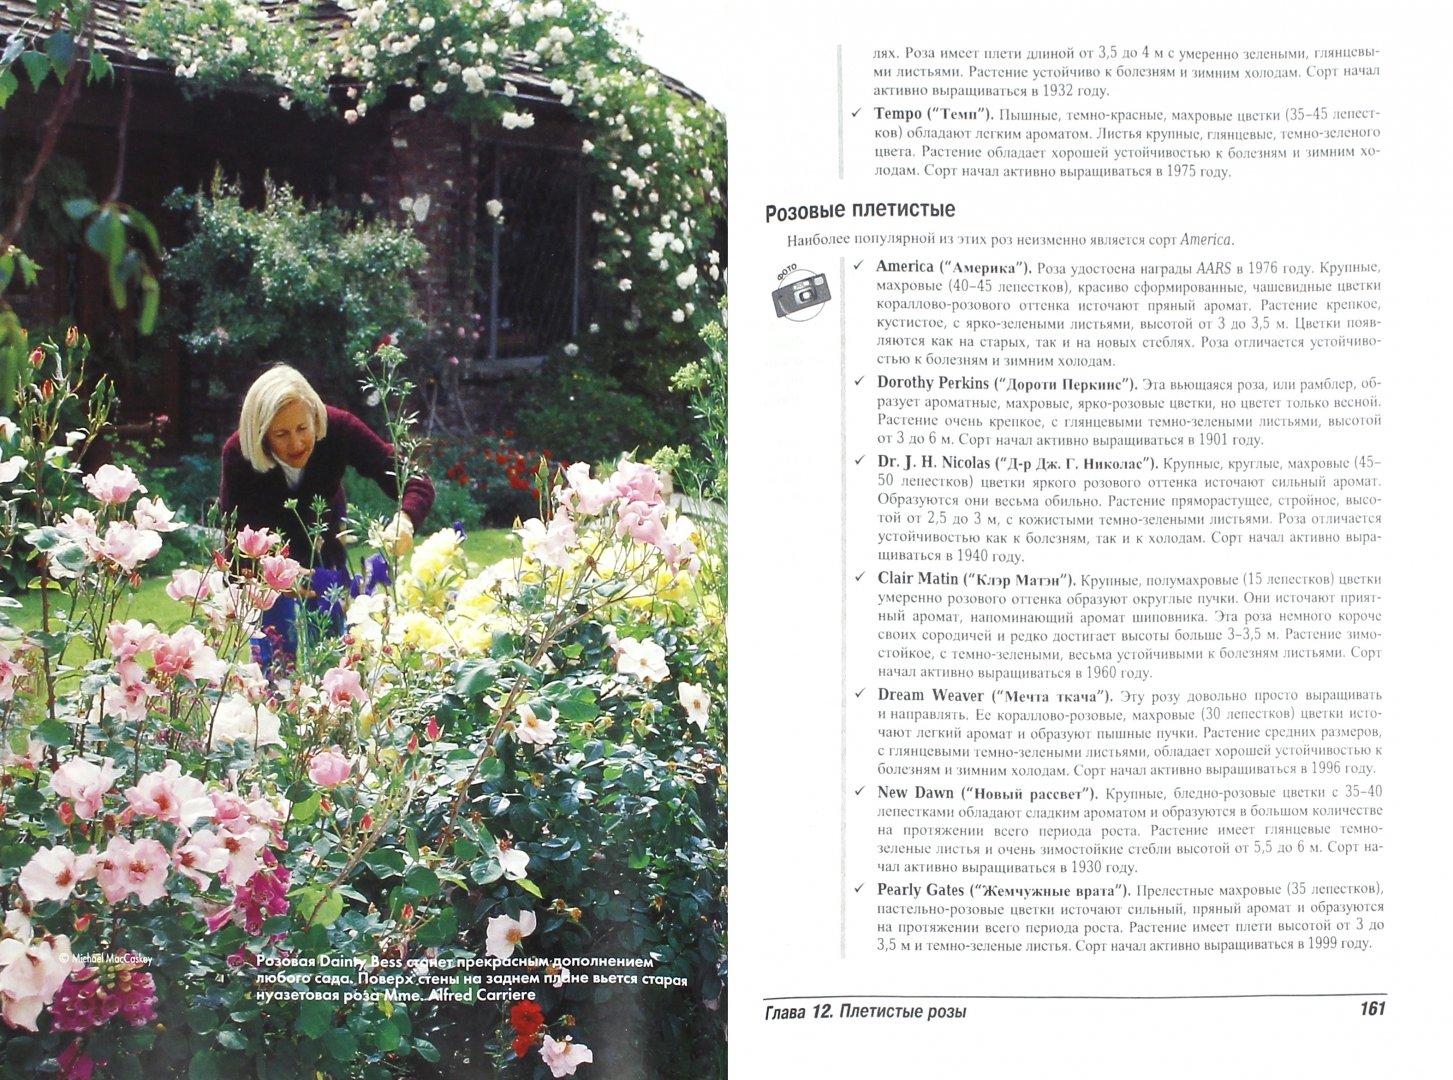 Иллюстрация 1 из 7 для Выращивание роз для чайников - Лэнс Уолхайм | Лабиринт - книги. Источник: Лабиринт